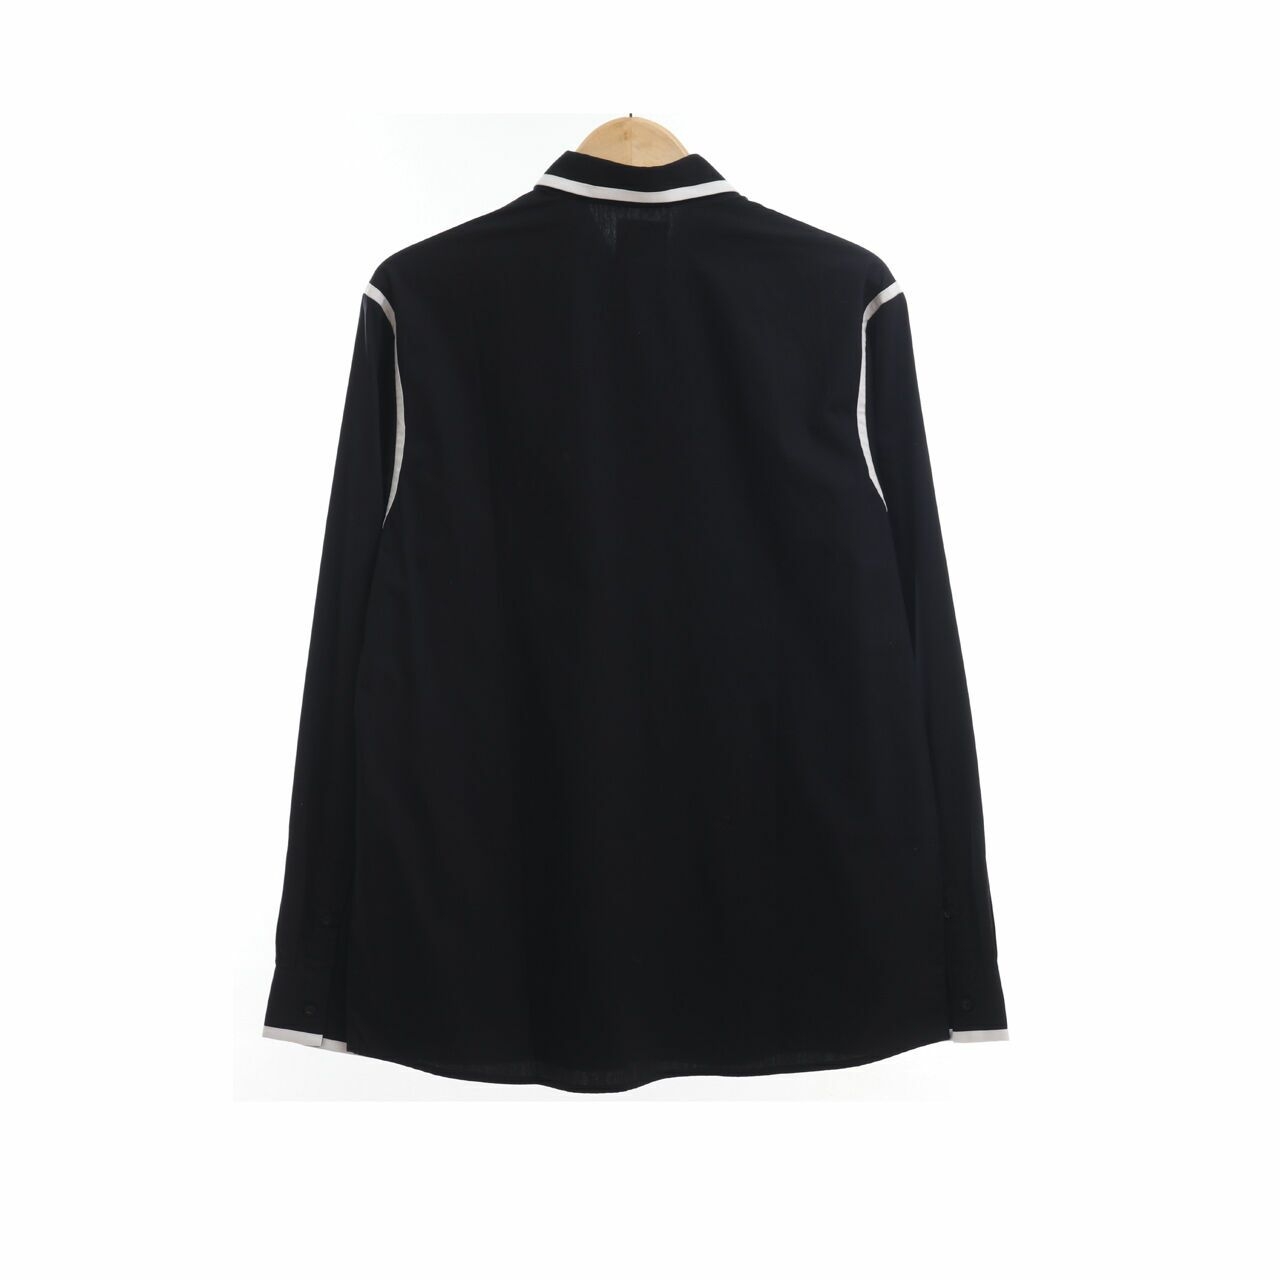 (X)SML Black Long Sleeve Shirt